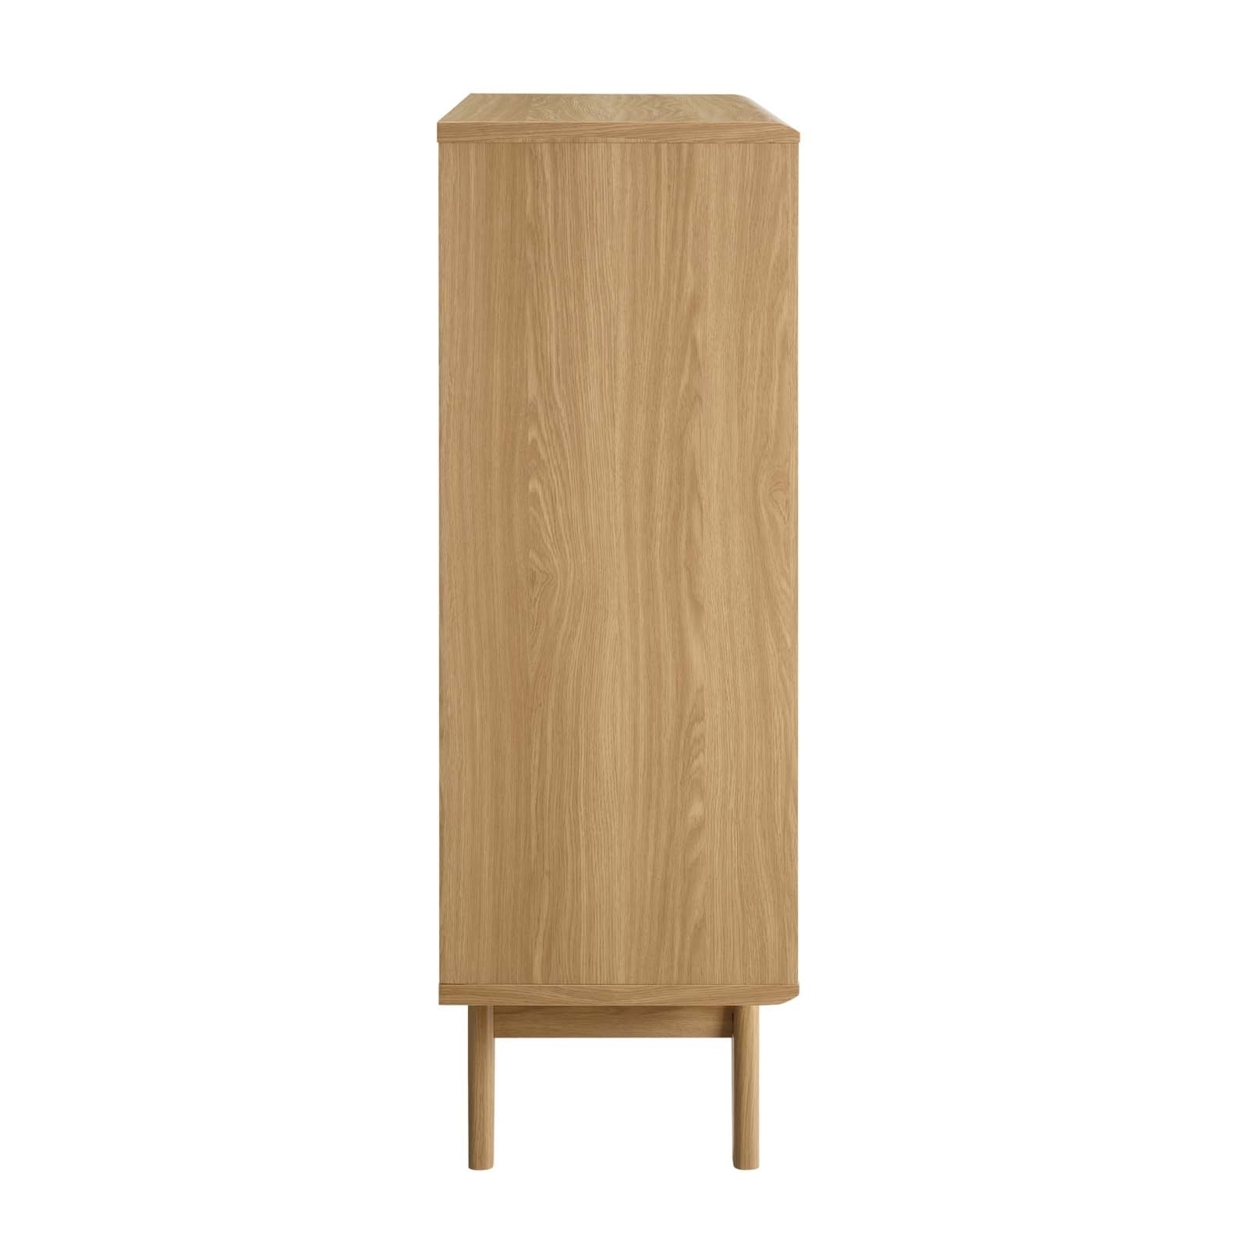 Render Three-Tier Display Storage Cabinet Stand, Oak